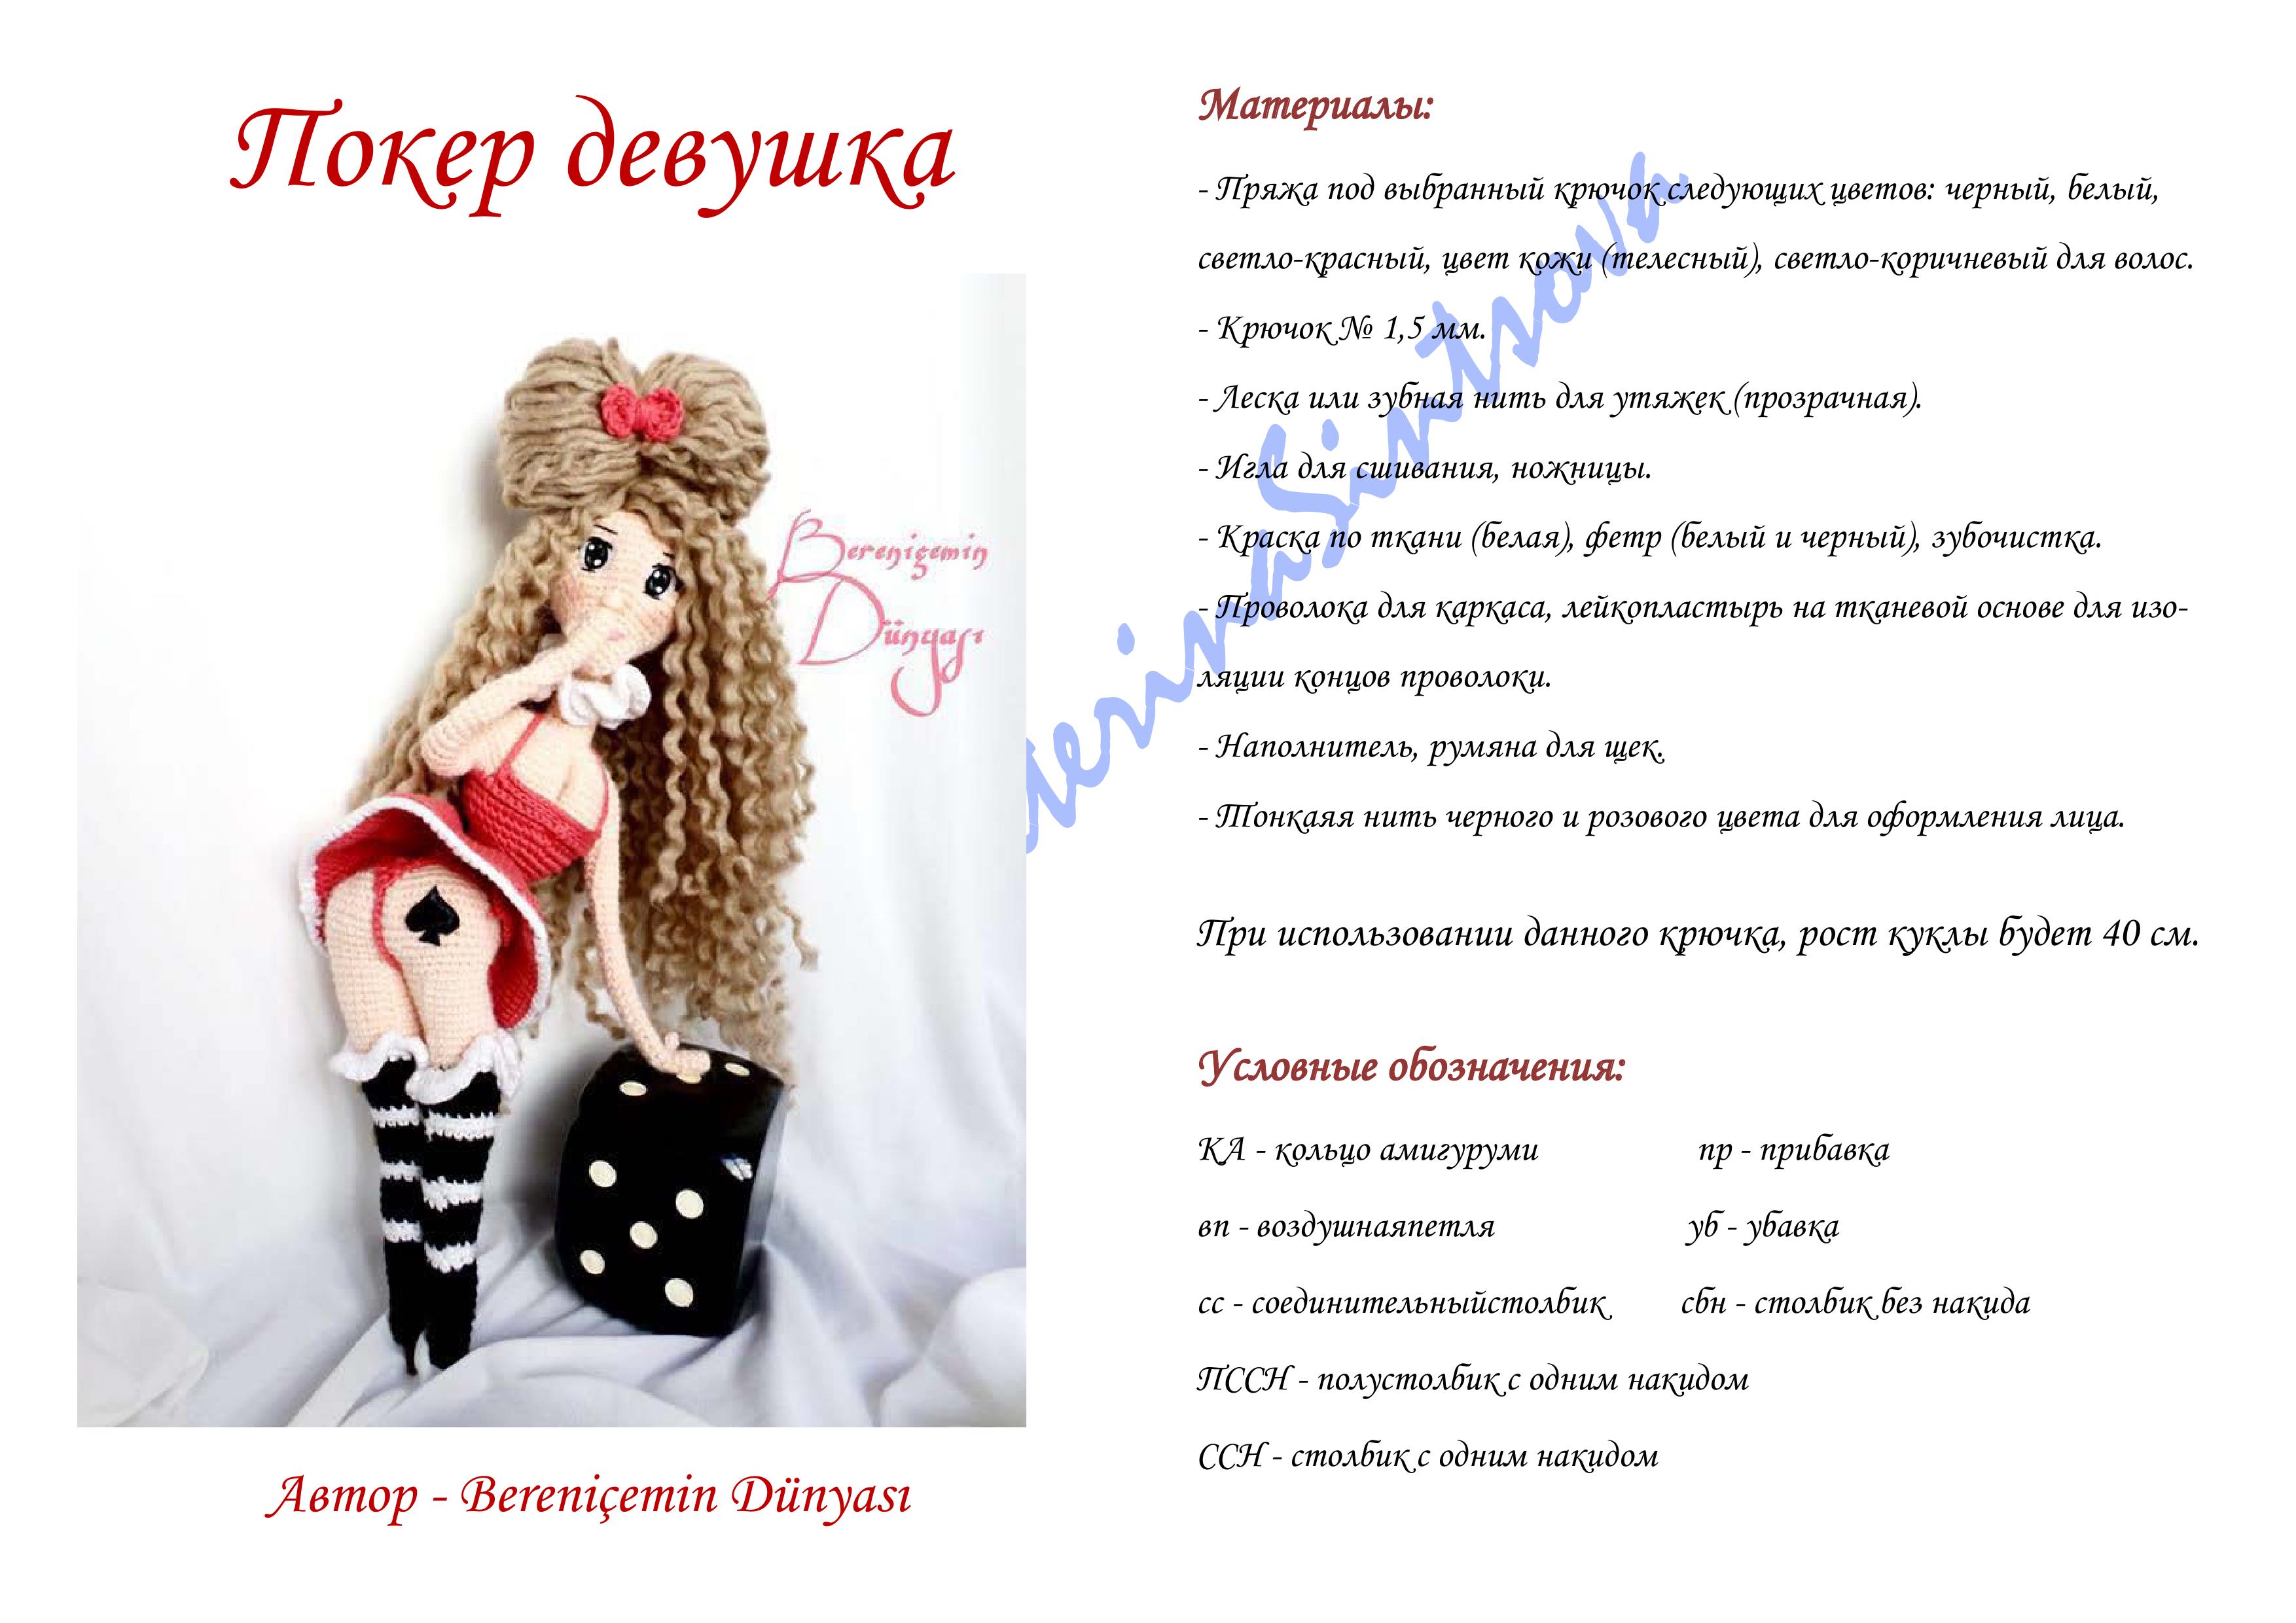 Покер - девушка от Berenicemin Dunyas 15.08. - 15.10. 22467254